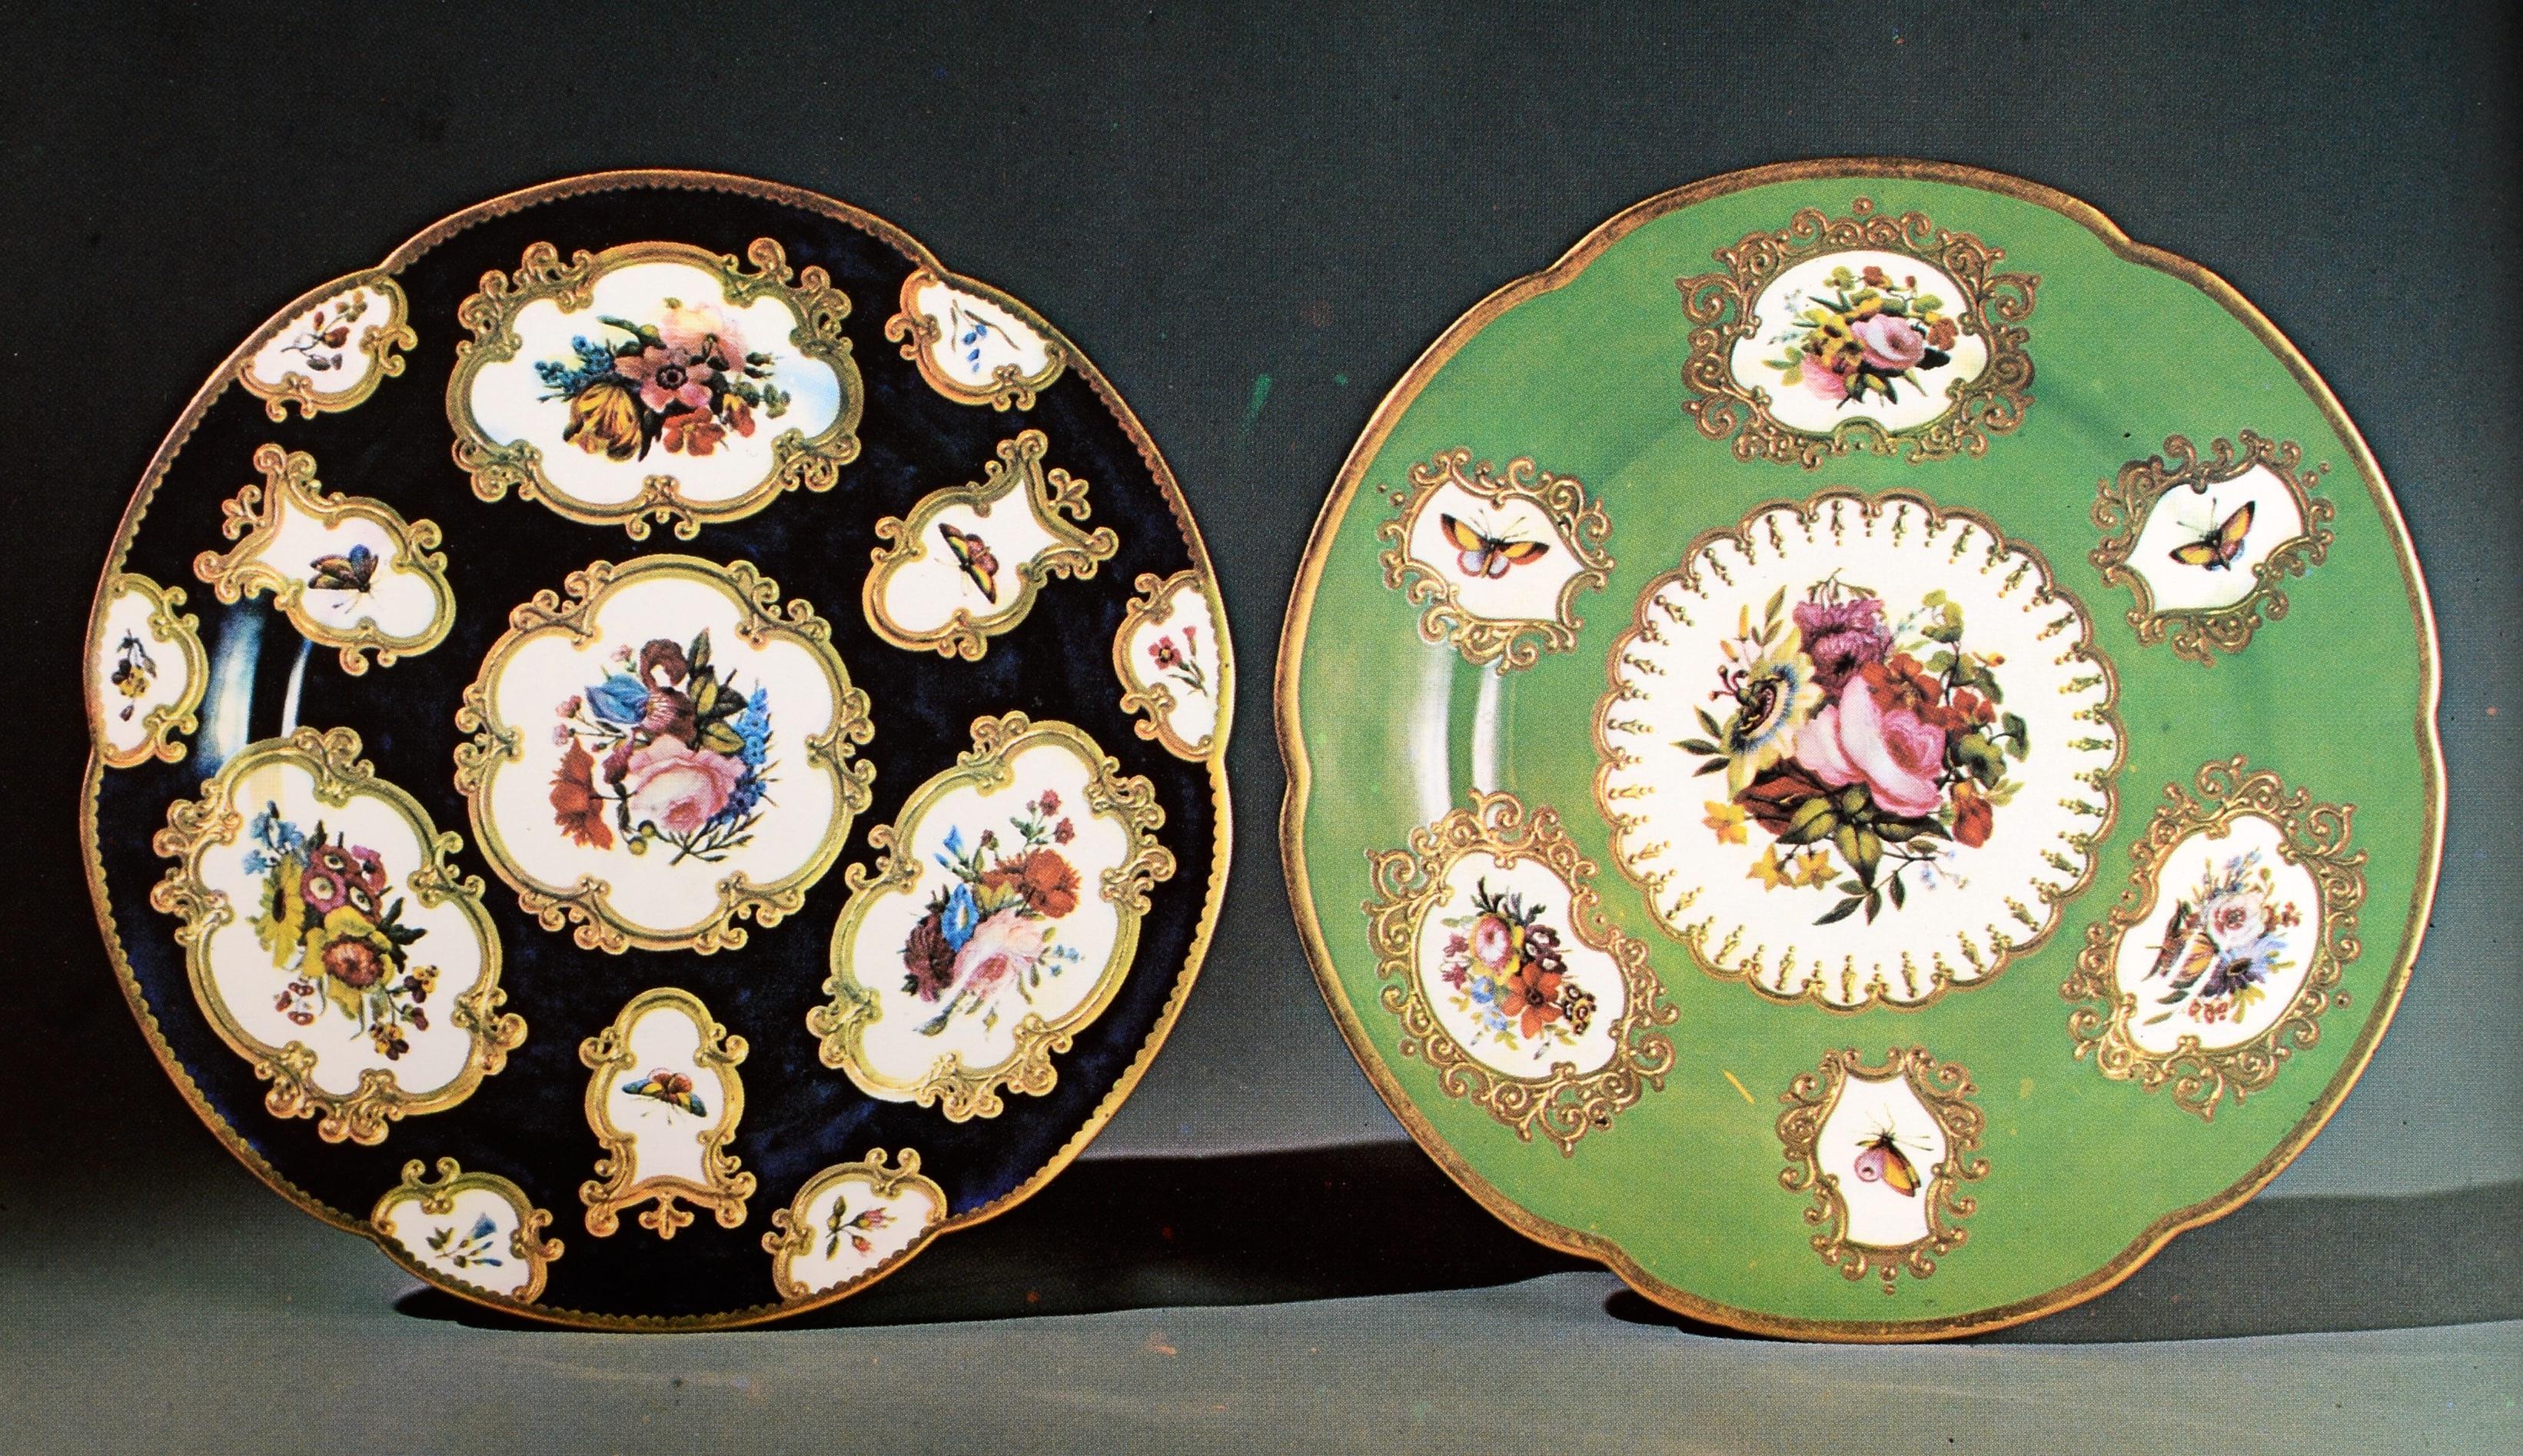 Flight and Barr Worcester Porcelain 1783-1840 by Henry Sandon For Sale 8